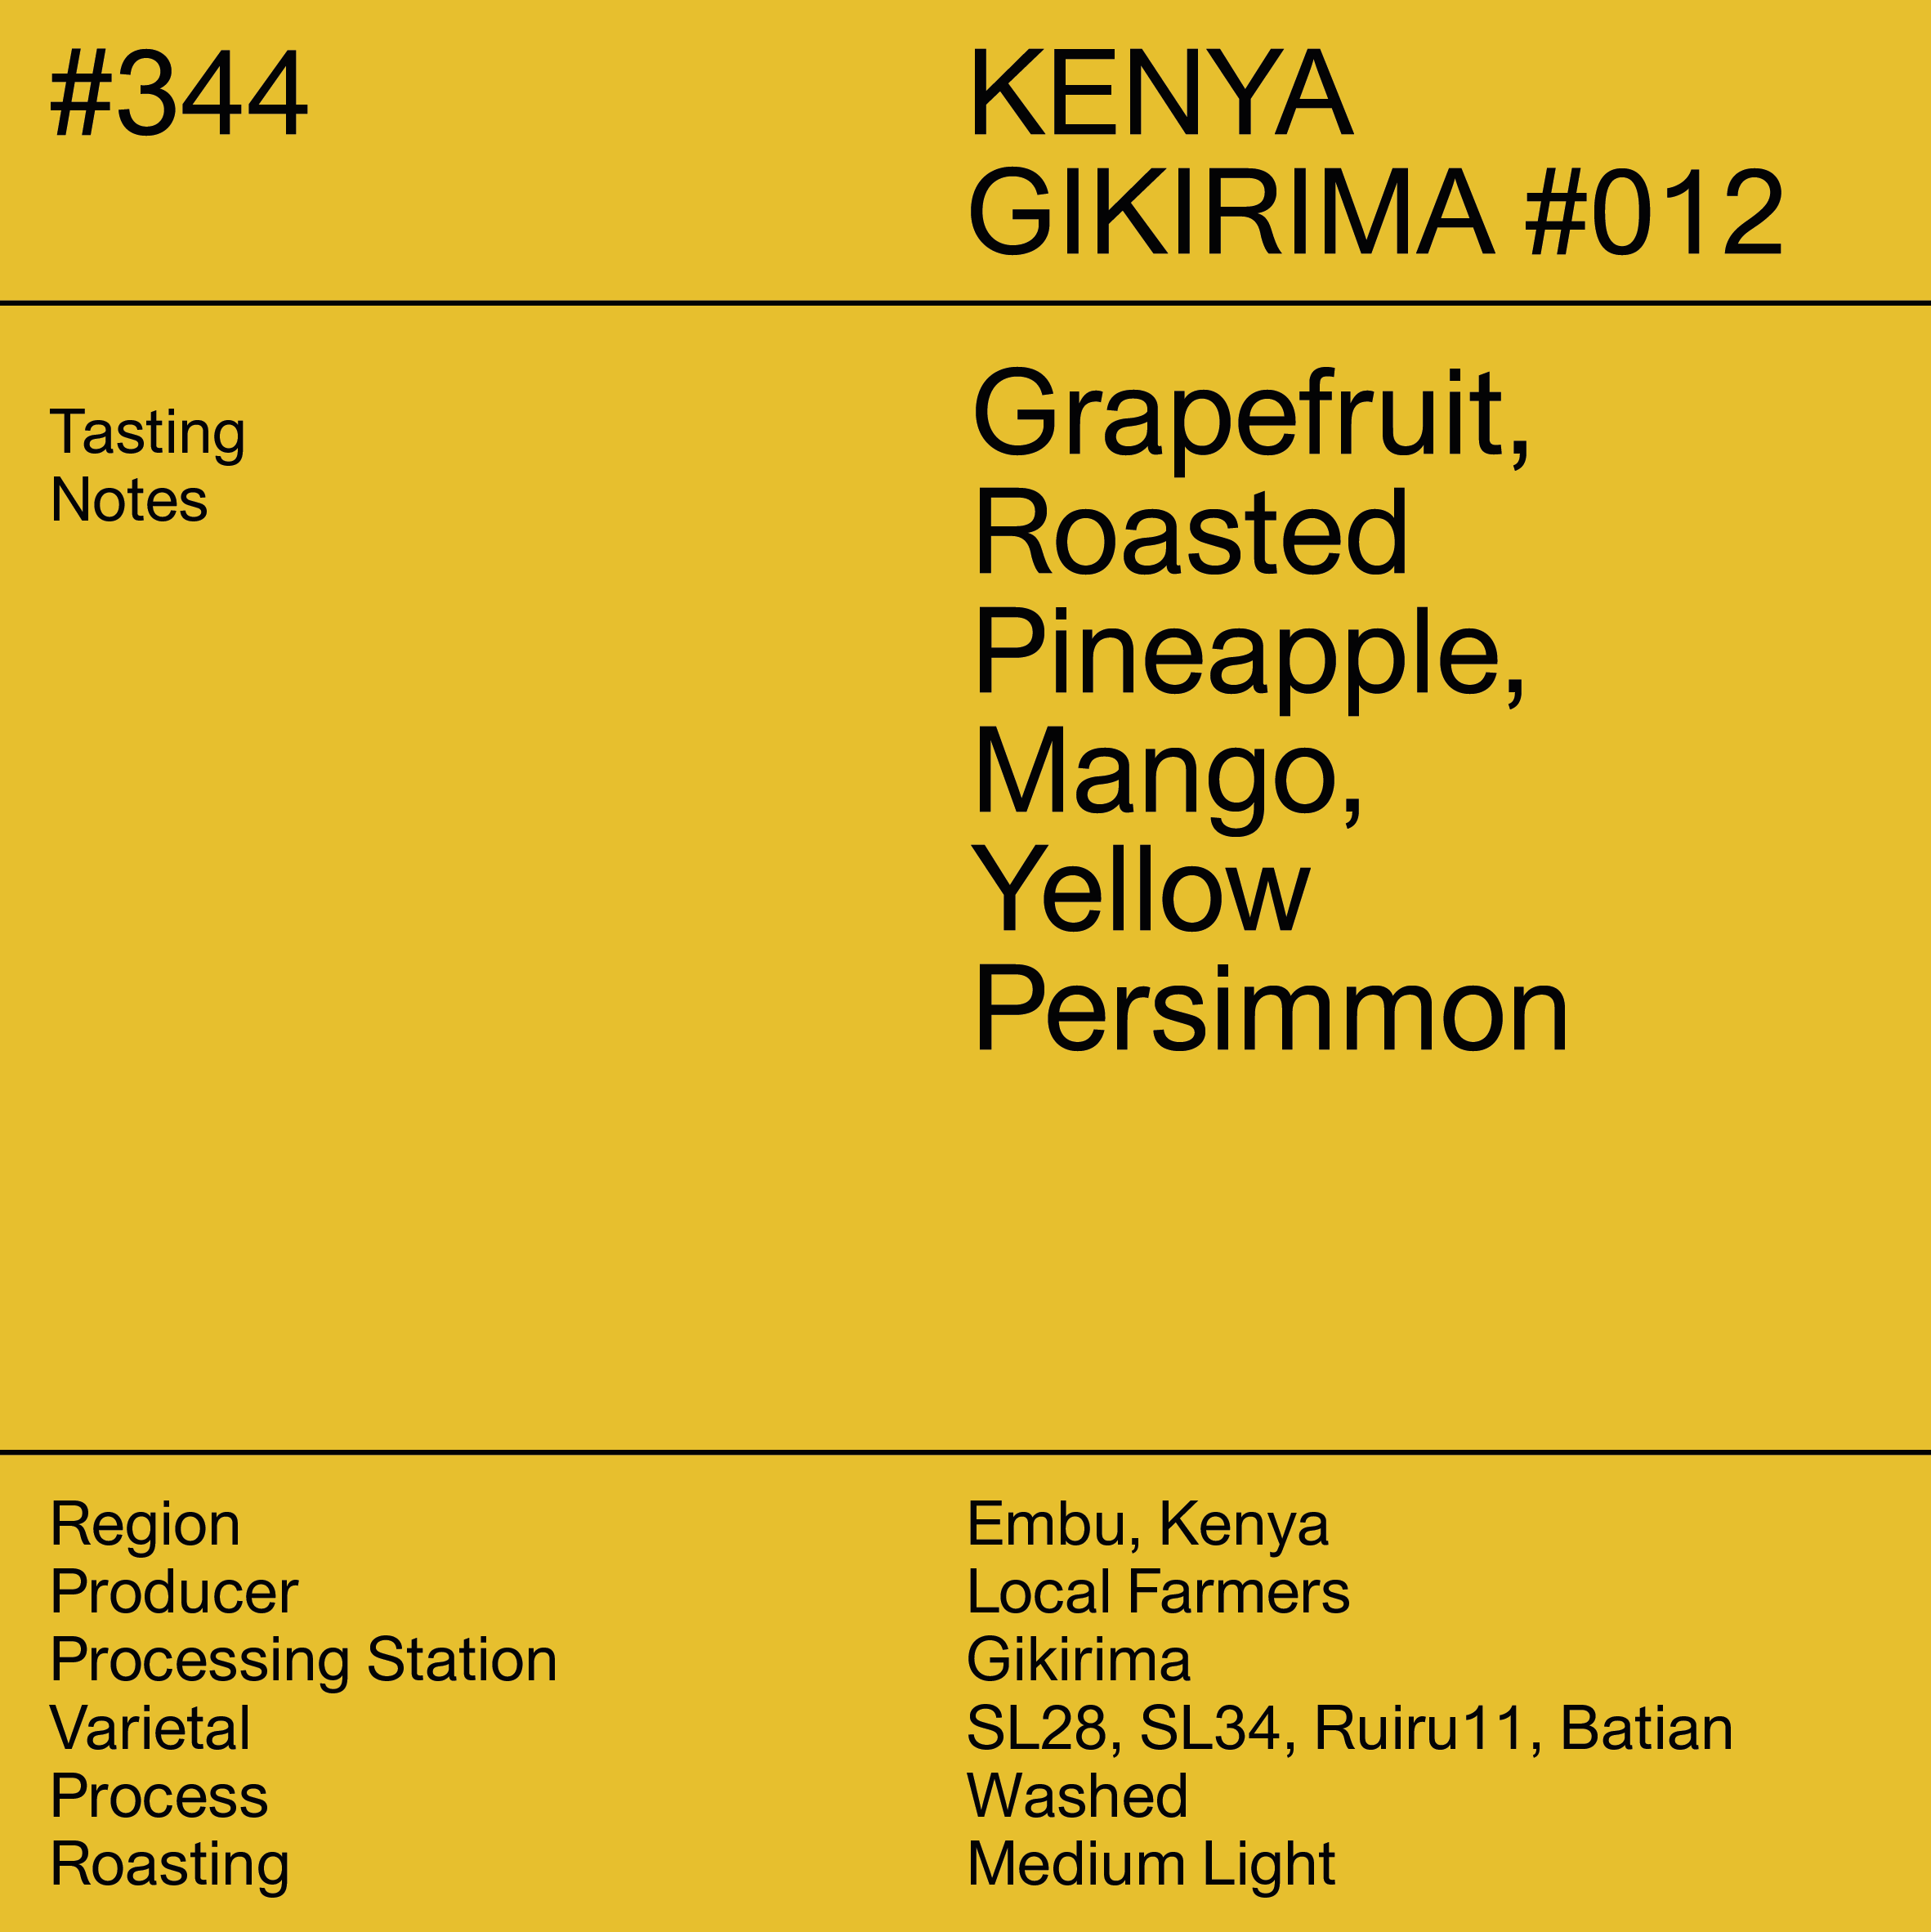 #344 Kenya Gikirima #012